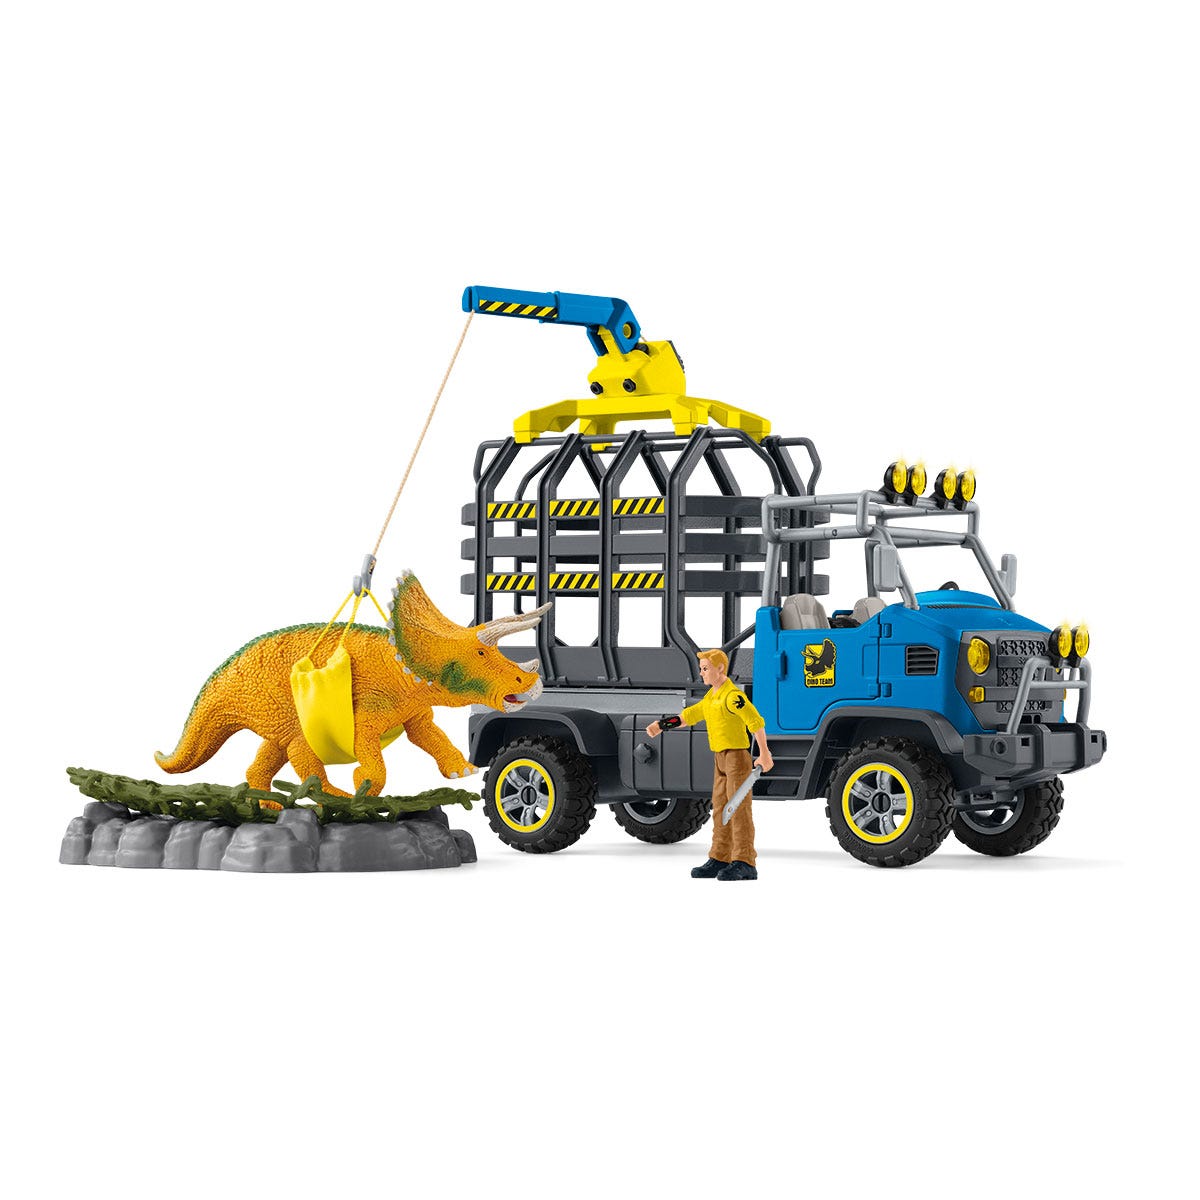 Mission de transport de dinosaures